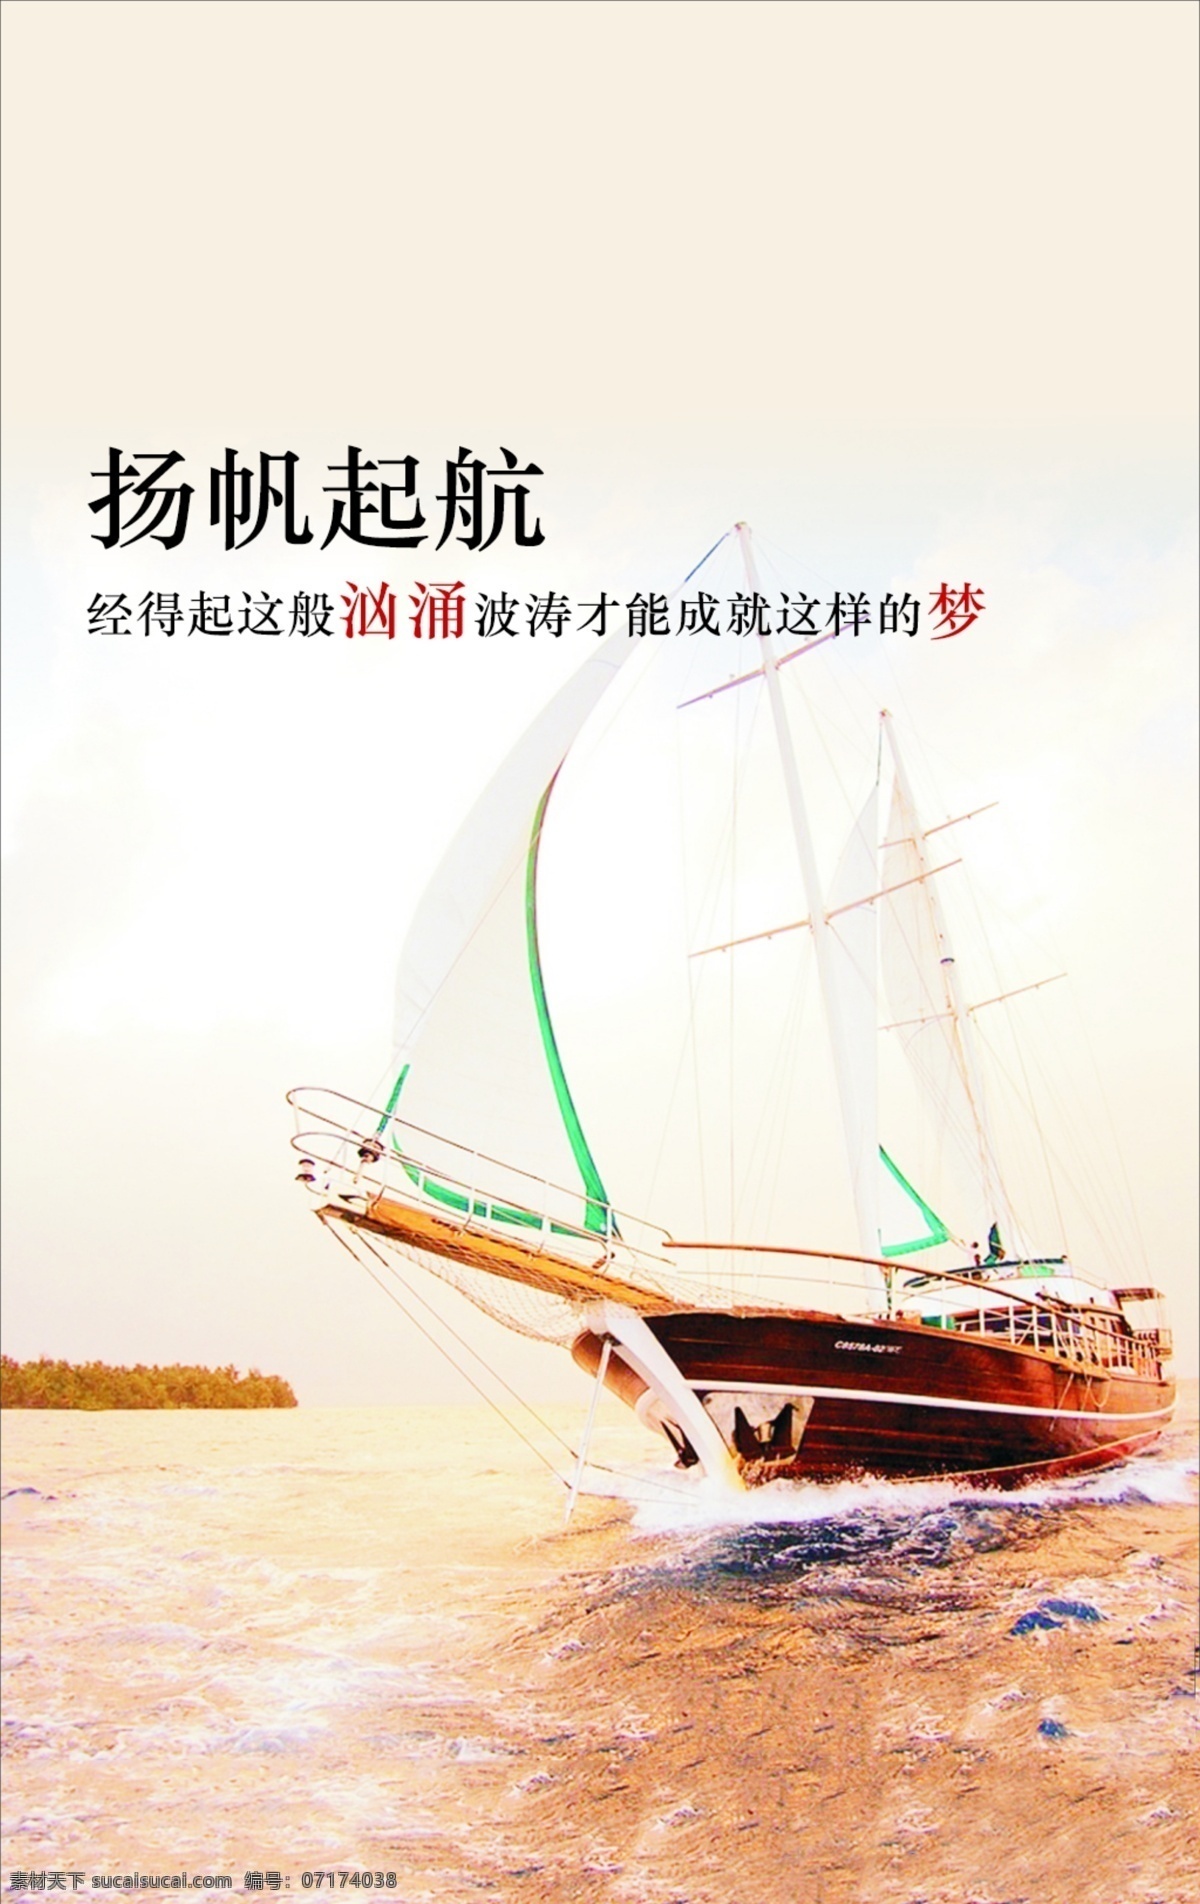 梦想 起航 船帆 帆船 波涛海岸 原创设计 原创海报